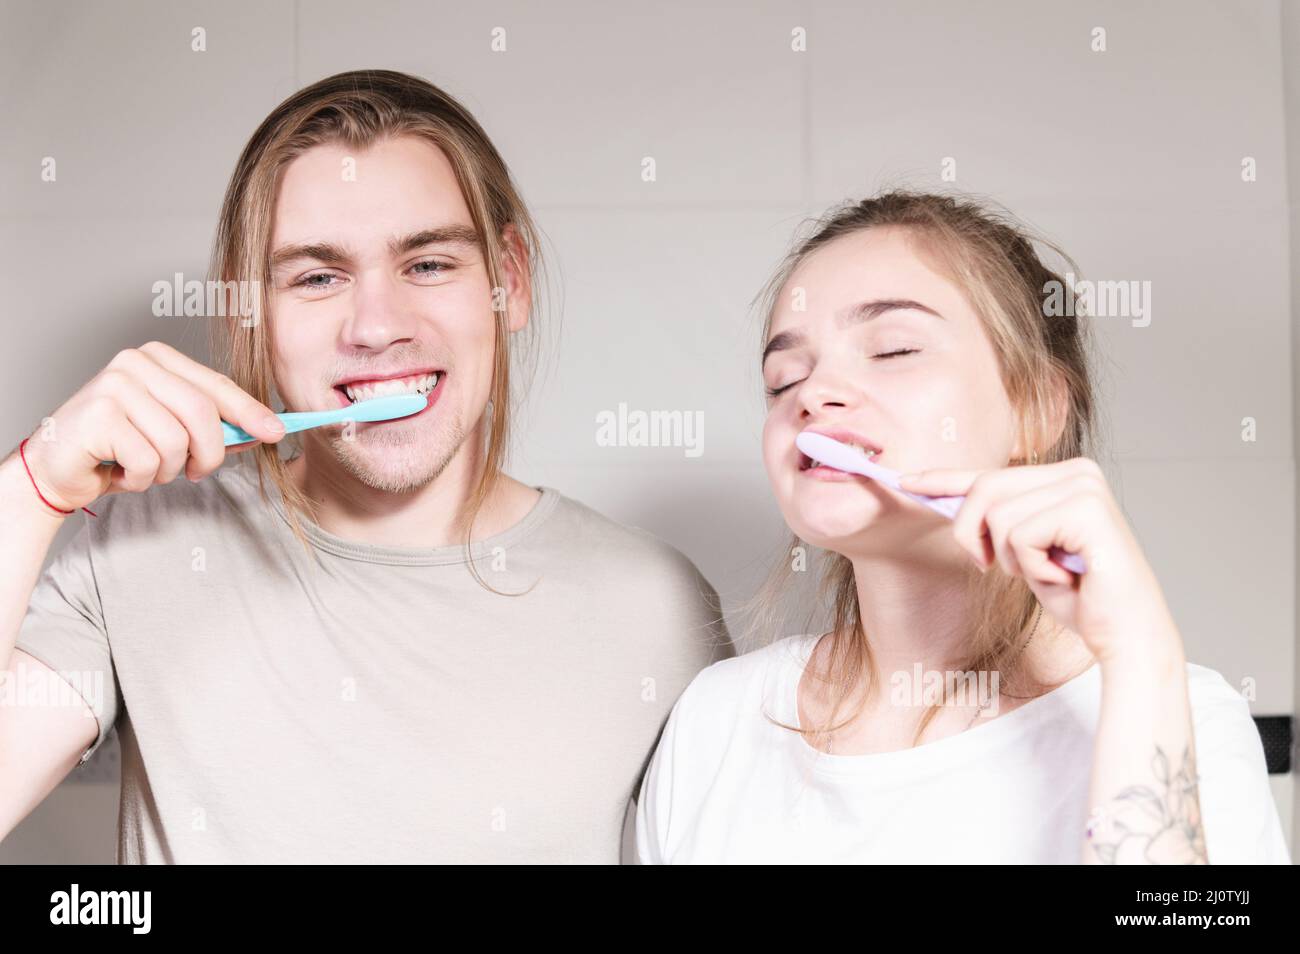 Un par joven de mellils de pelo largo se cepilla los dientes en el baño por la mañana. Una sonrisa sana y cuidado dental y oral Foto de stock